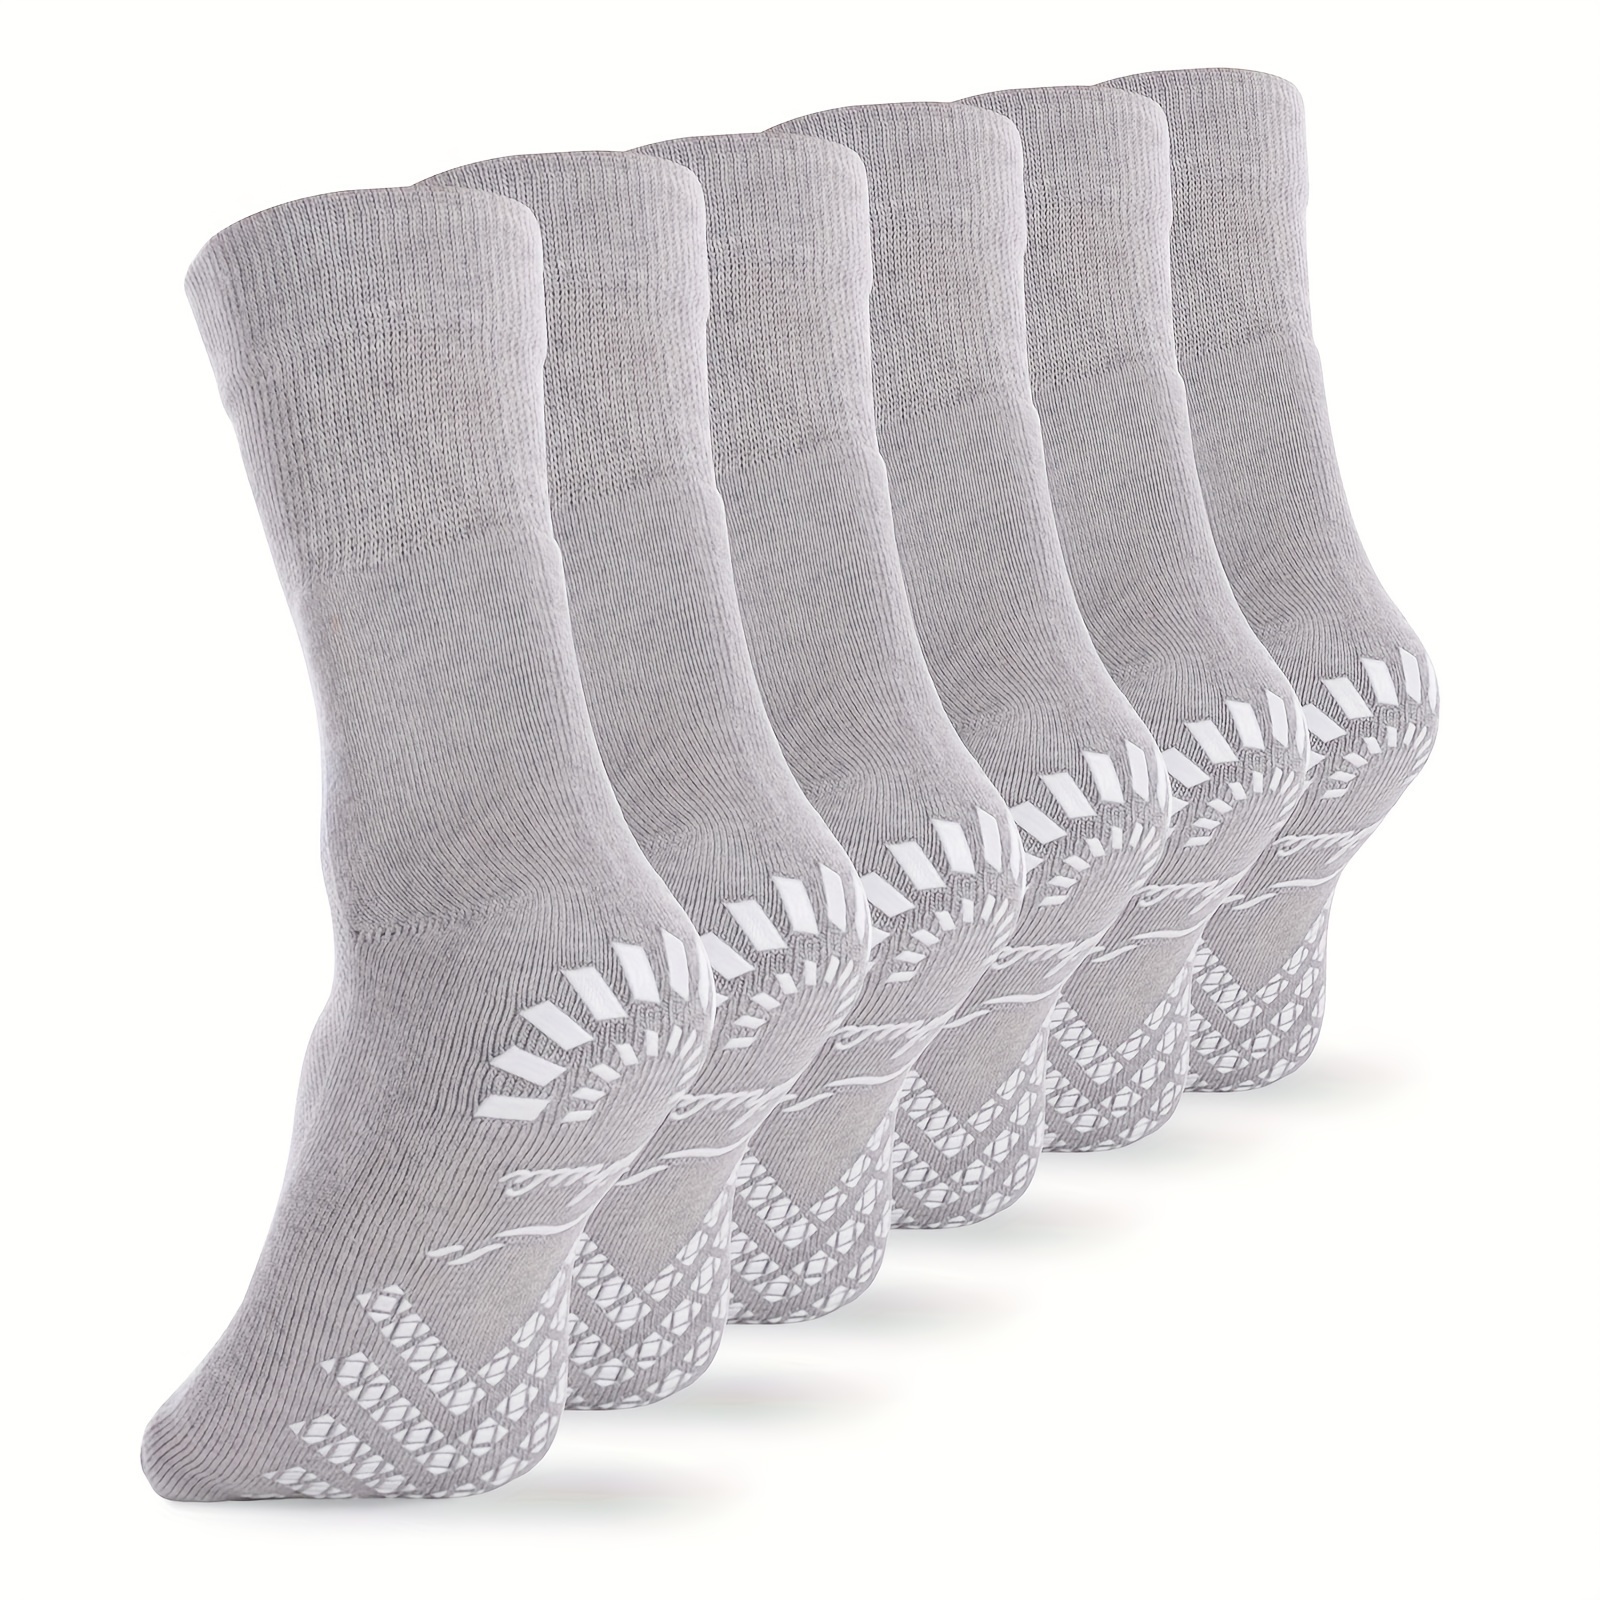 Calcetines para diabéticos para mujeres y hombres, 6 pares de calcetines de  bambú para diabéticos no vinculantes, calcetines extra anchos elásticos